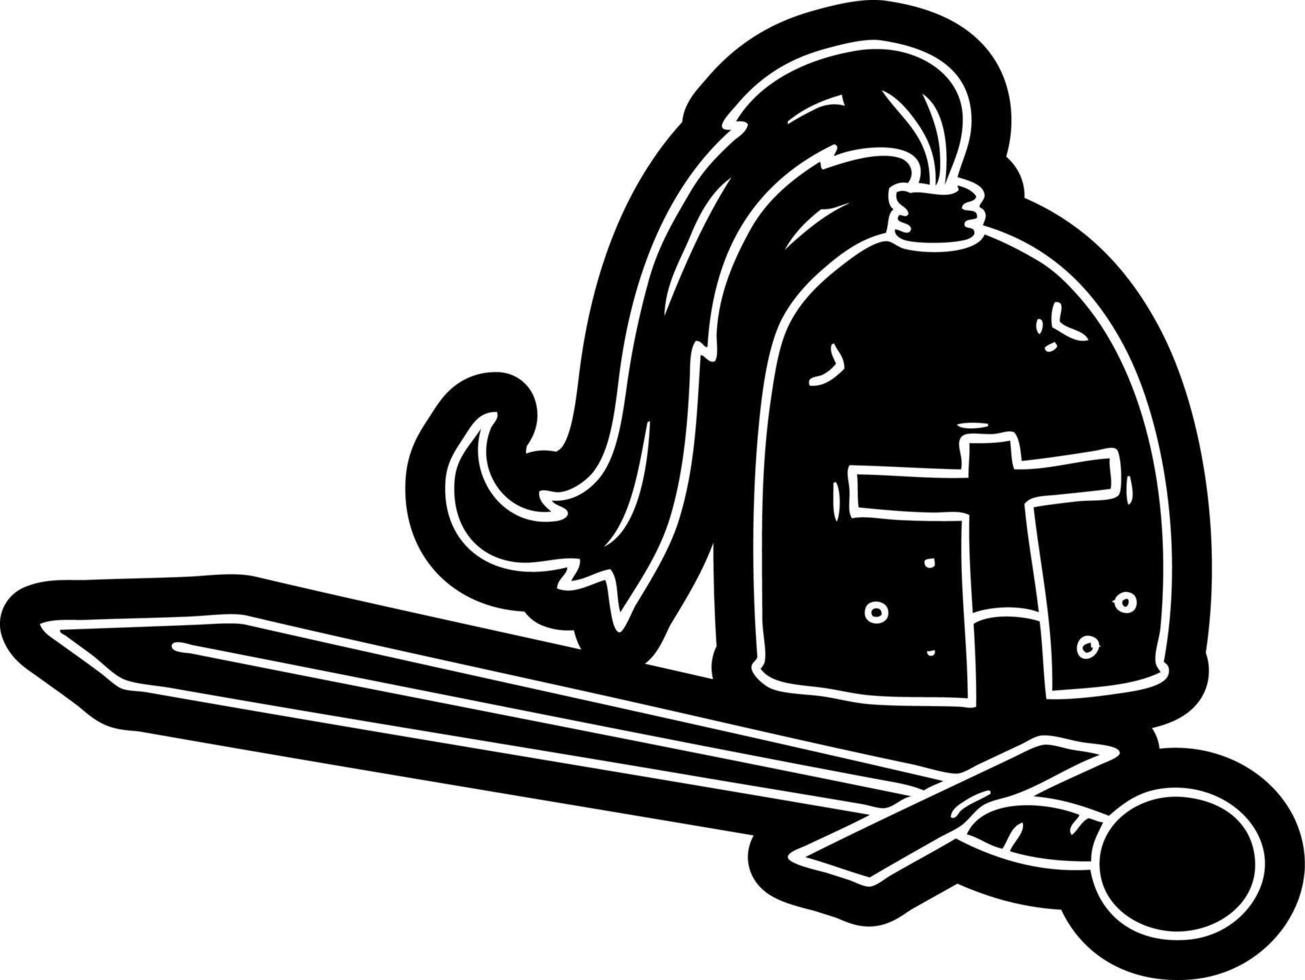 icona del fumetto disegno di un elmo e una spada medievali vettore